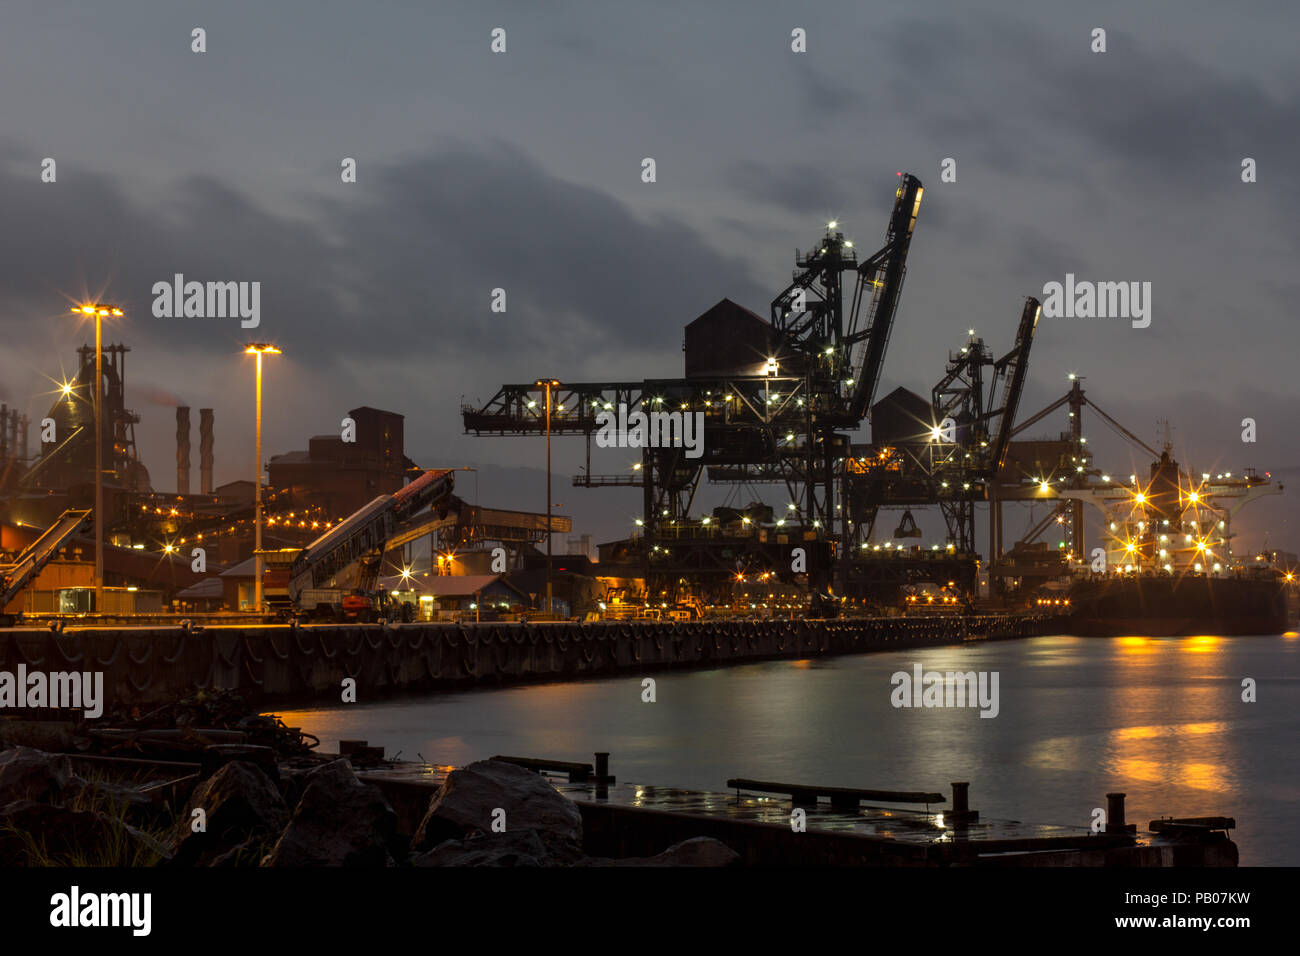 Port industriel de transport du charbon et du minerai de fer navire à un port australien sur l'humide sombre nuit de tempête Banque D'Images